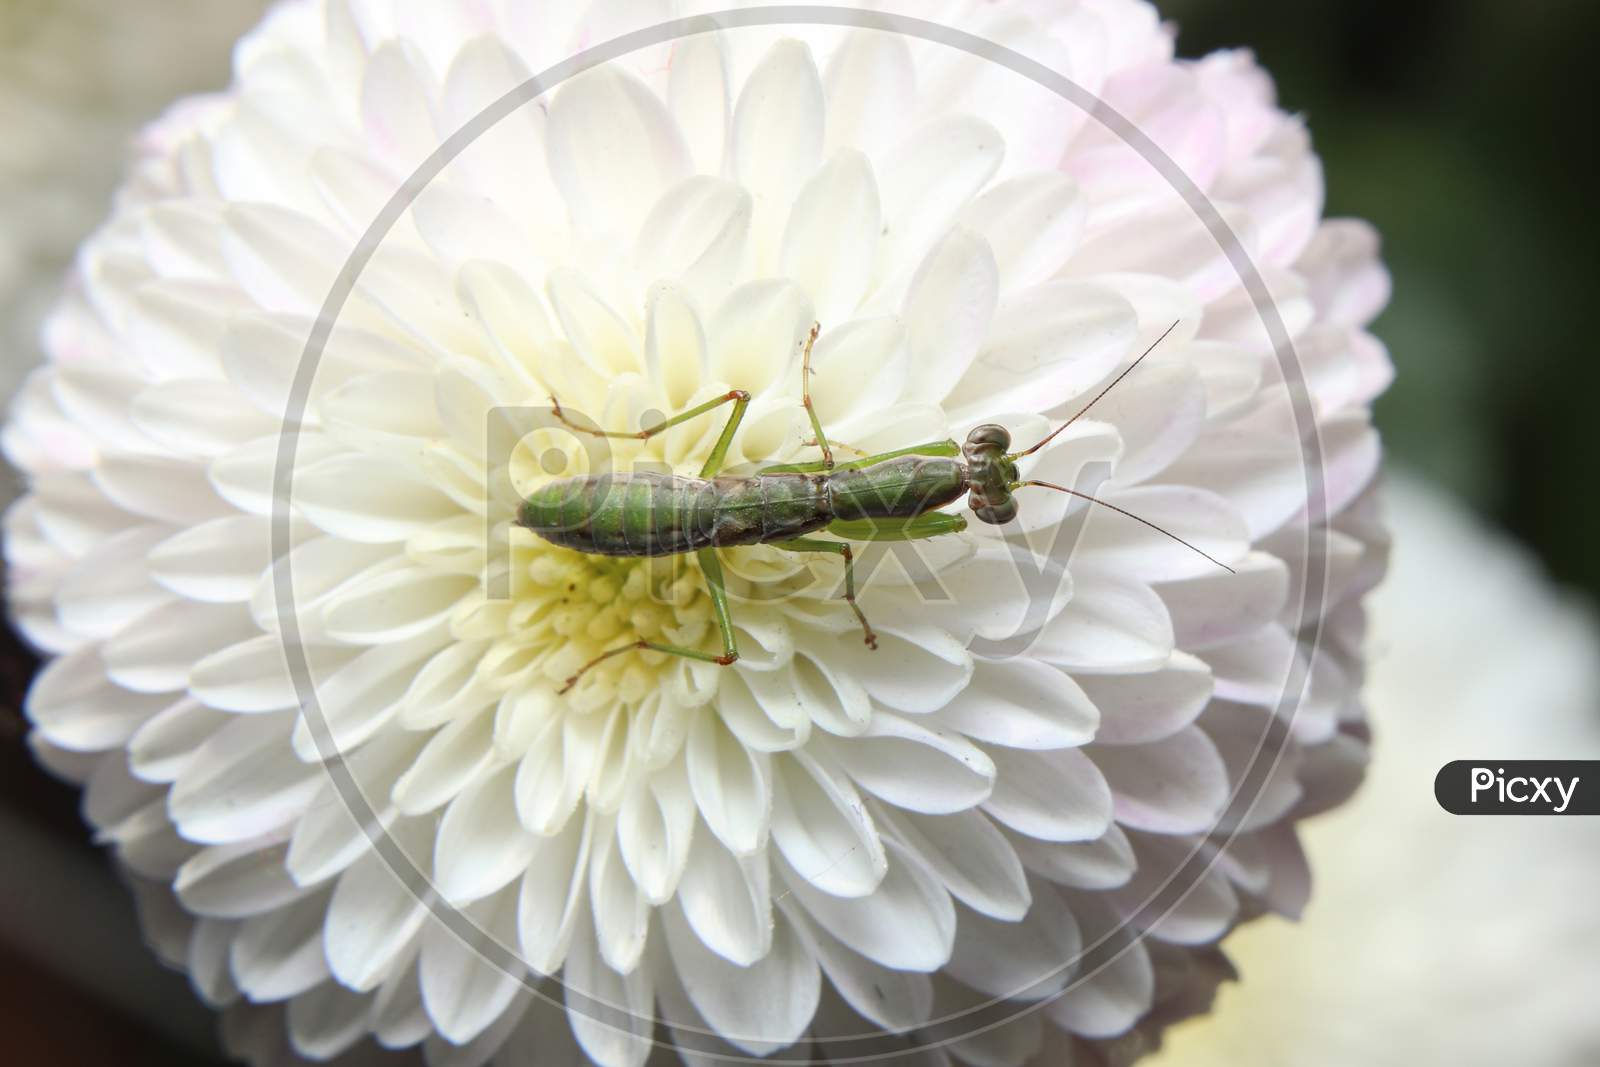 Praying Mantis On A Flower